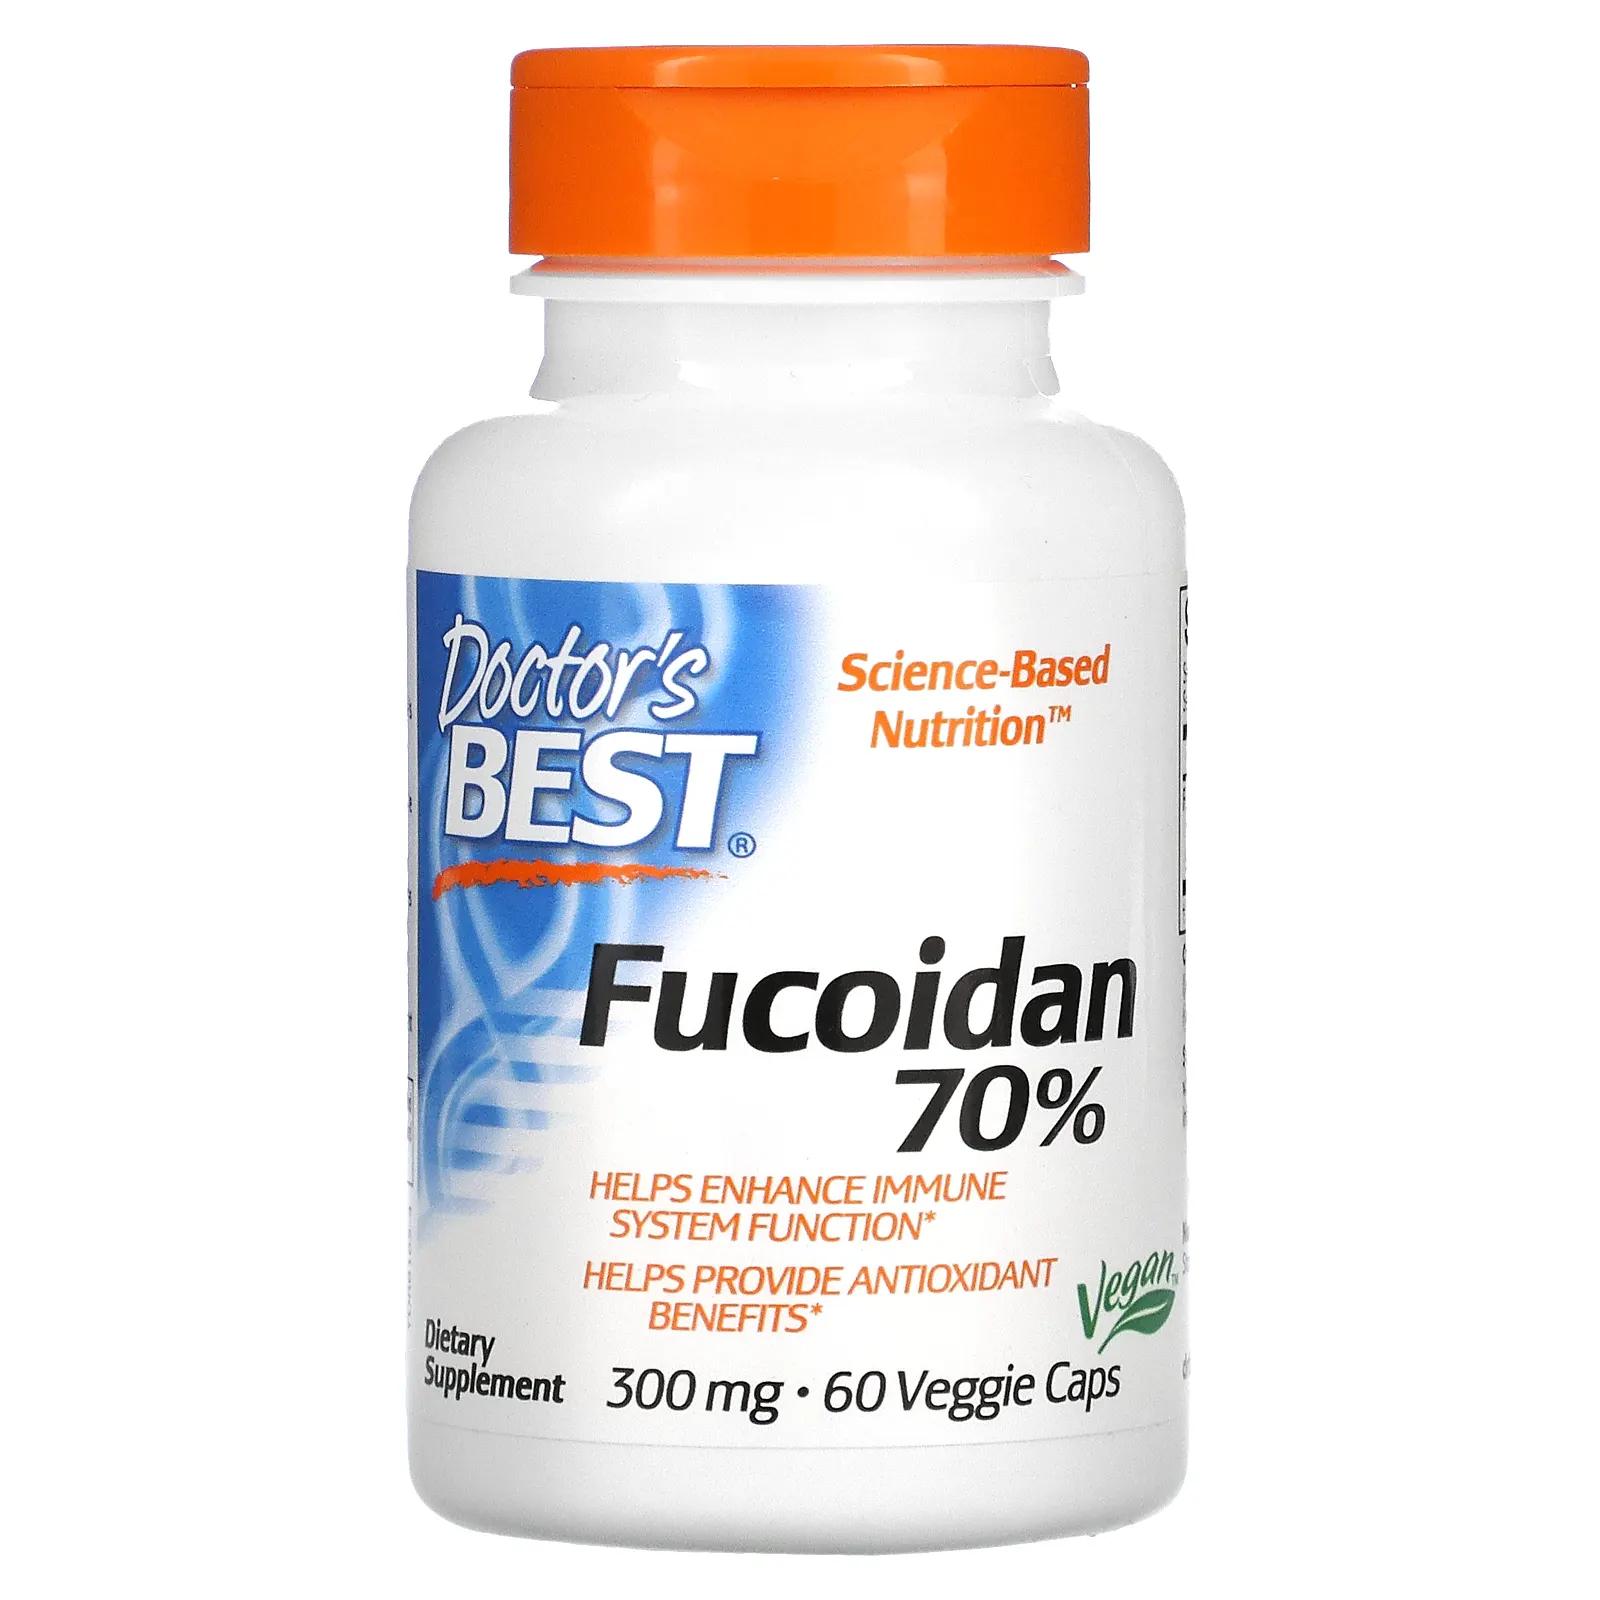 Doctor's Best Фукоидан Best Fucoidan 70% 60 вегетарианских капсул фукоидан 70% doctor s best 60 таблеток